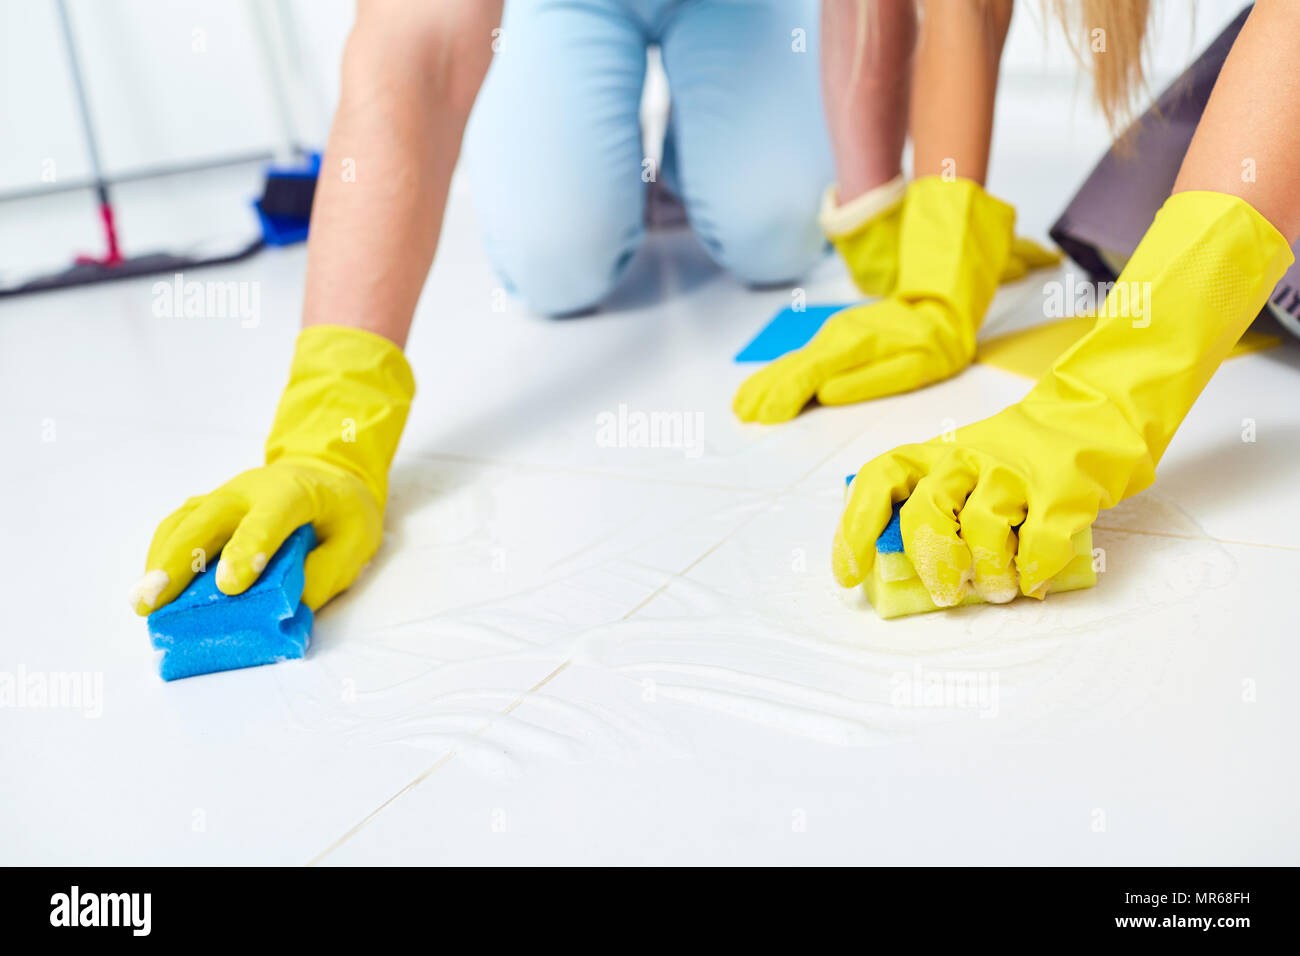 Putzen, Waschen. Eine Nahaufnahmen der Hände mit Handschuhen auf Reinigung. Stockfoto